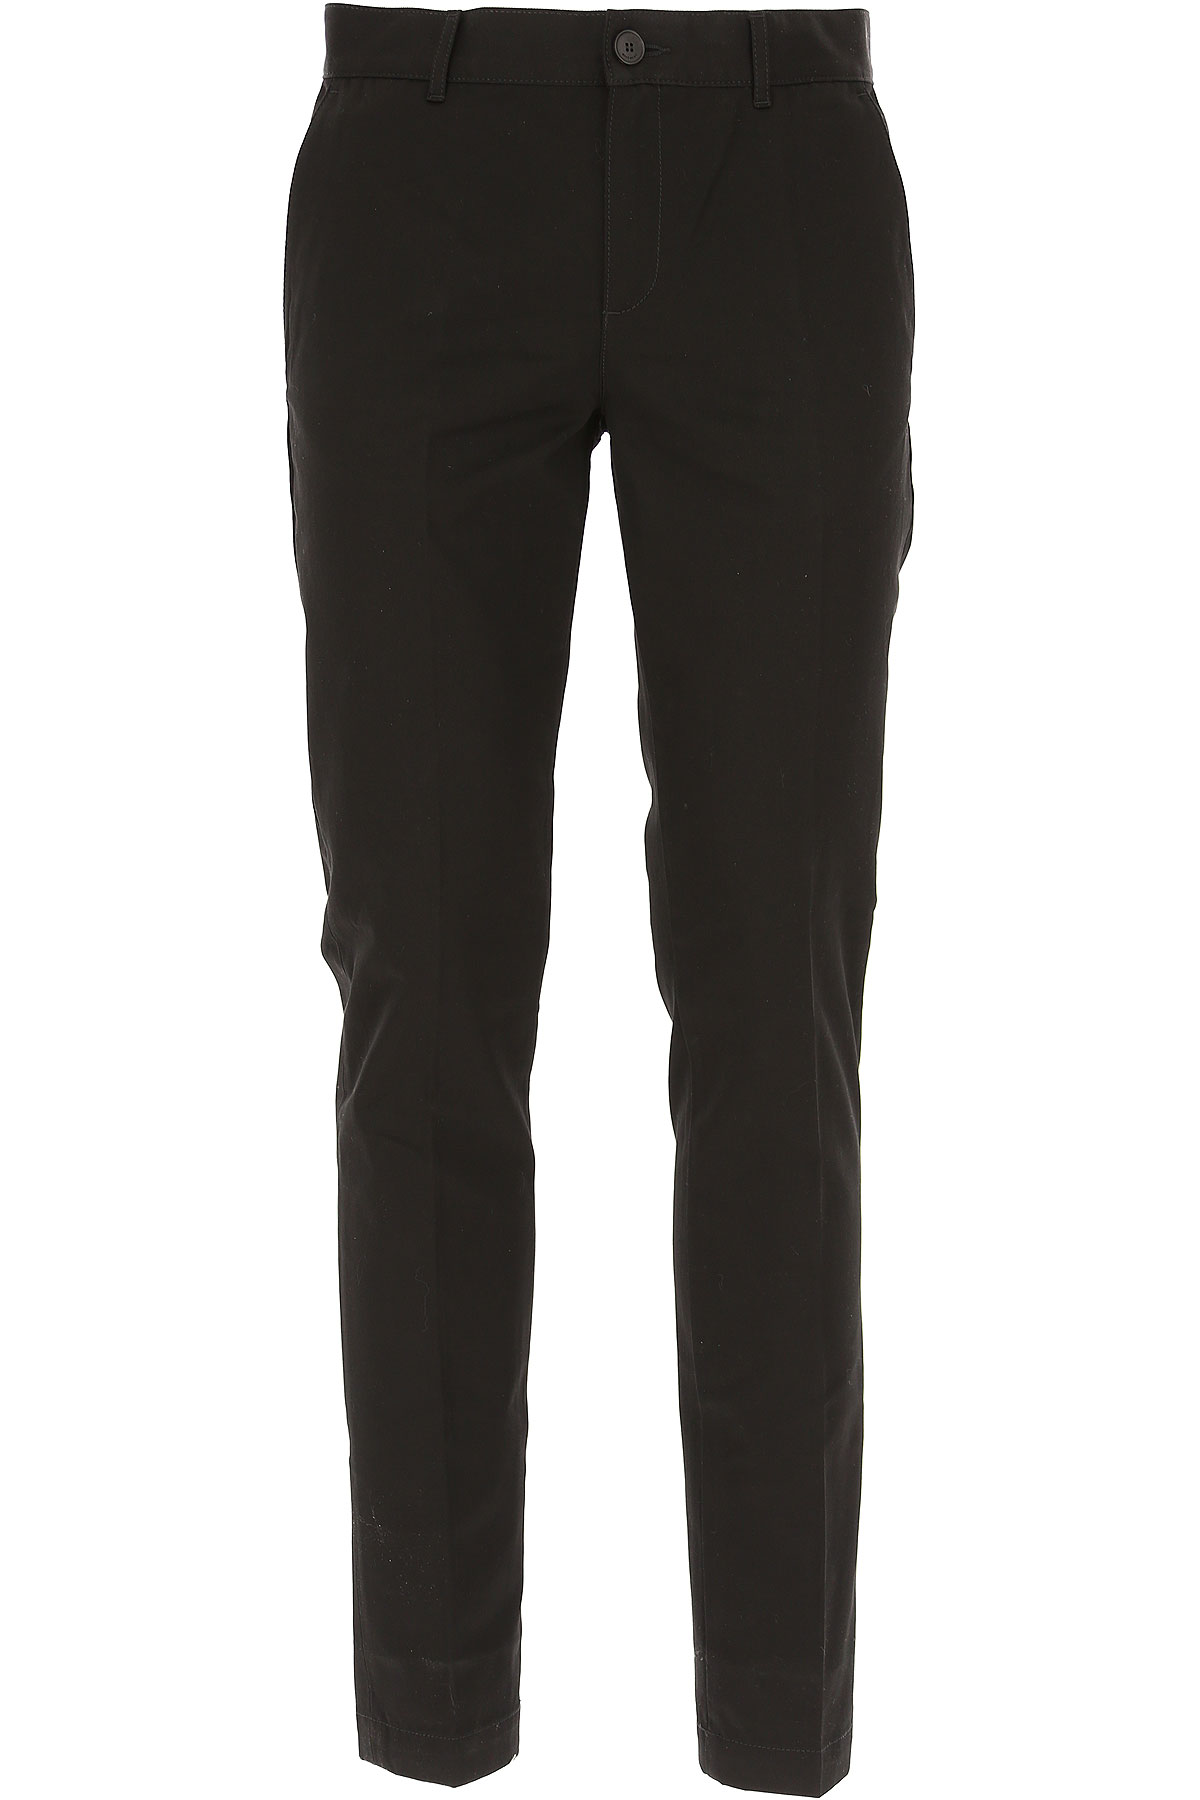 Givenchy Pantalon Homme Outlet, Noir, Coton, 2017, 48 50 52 54